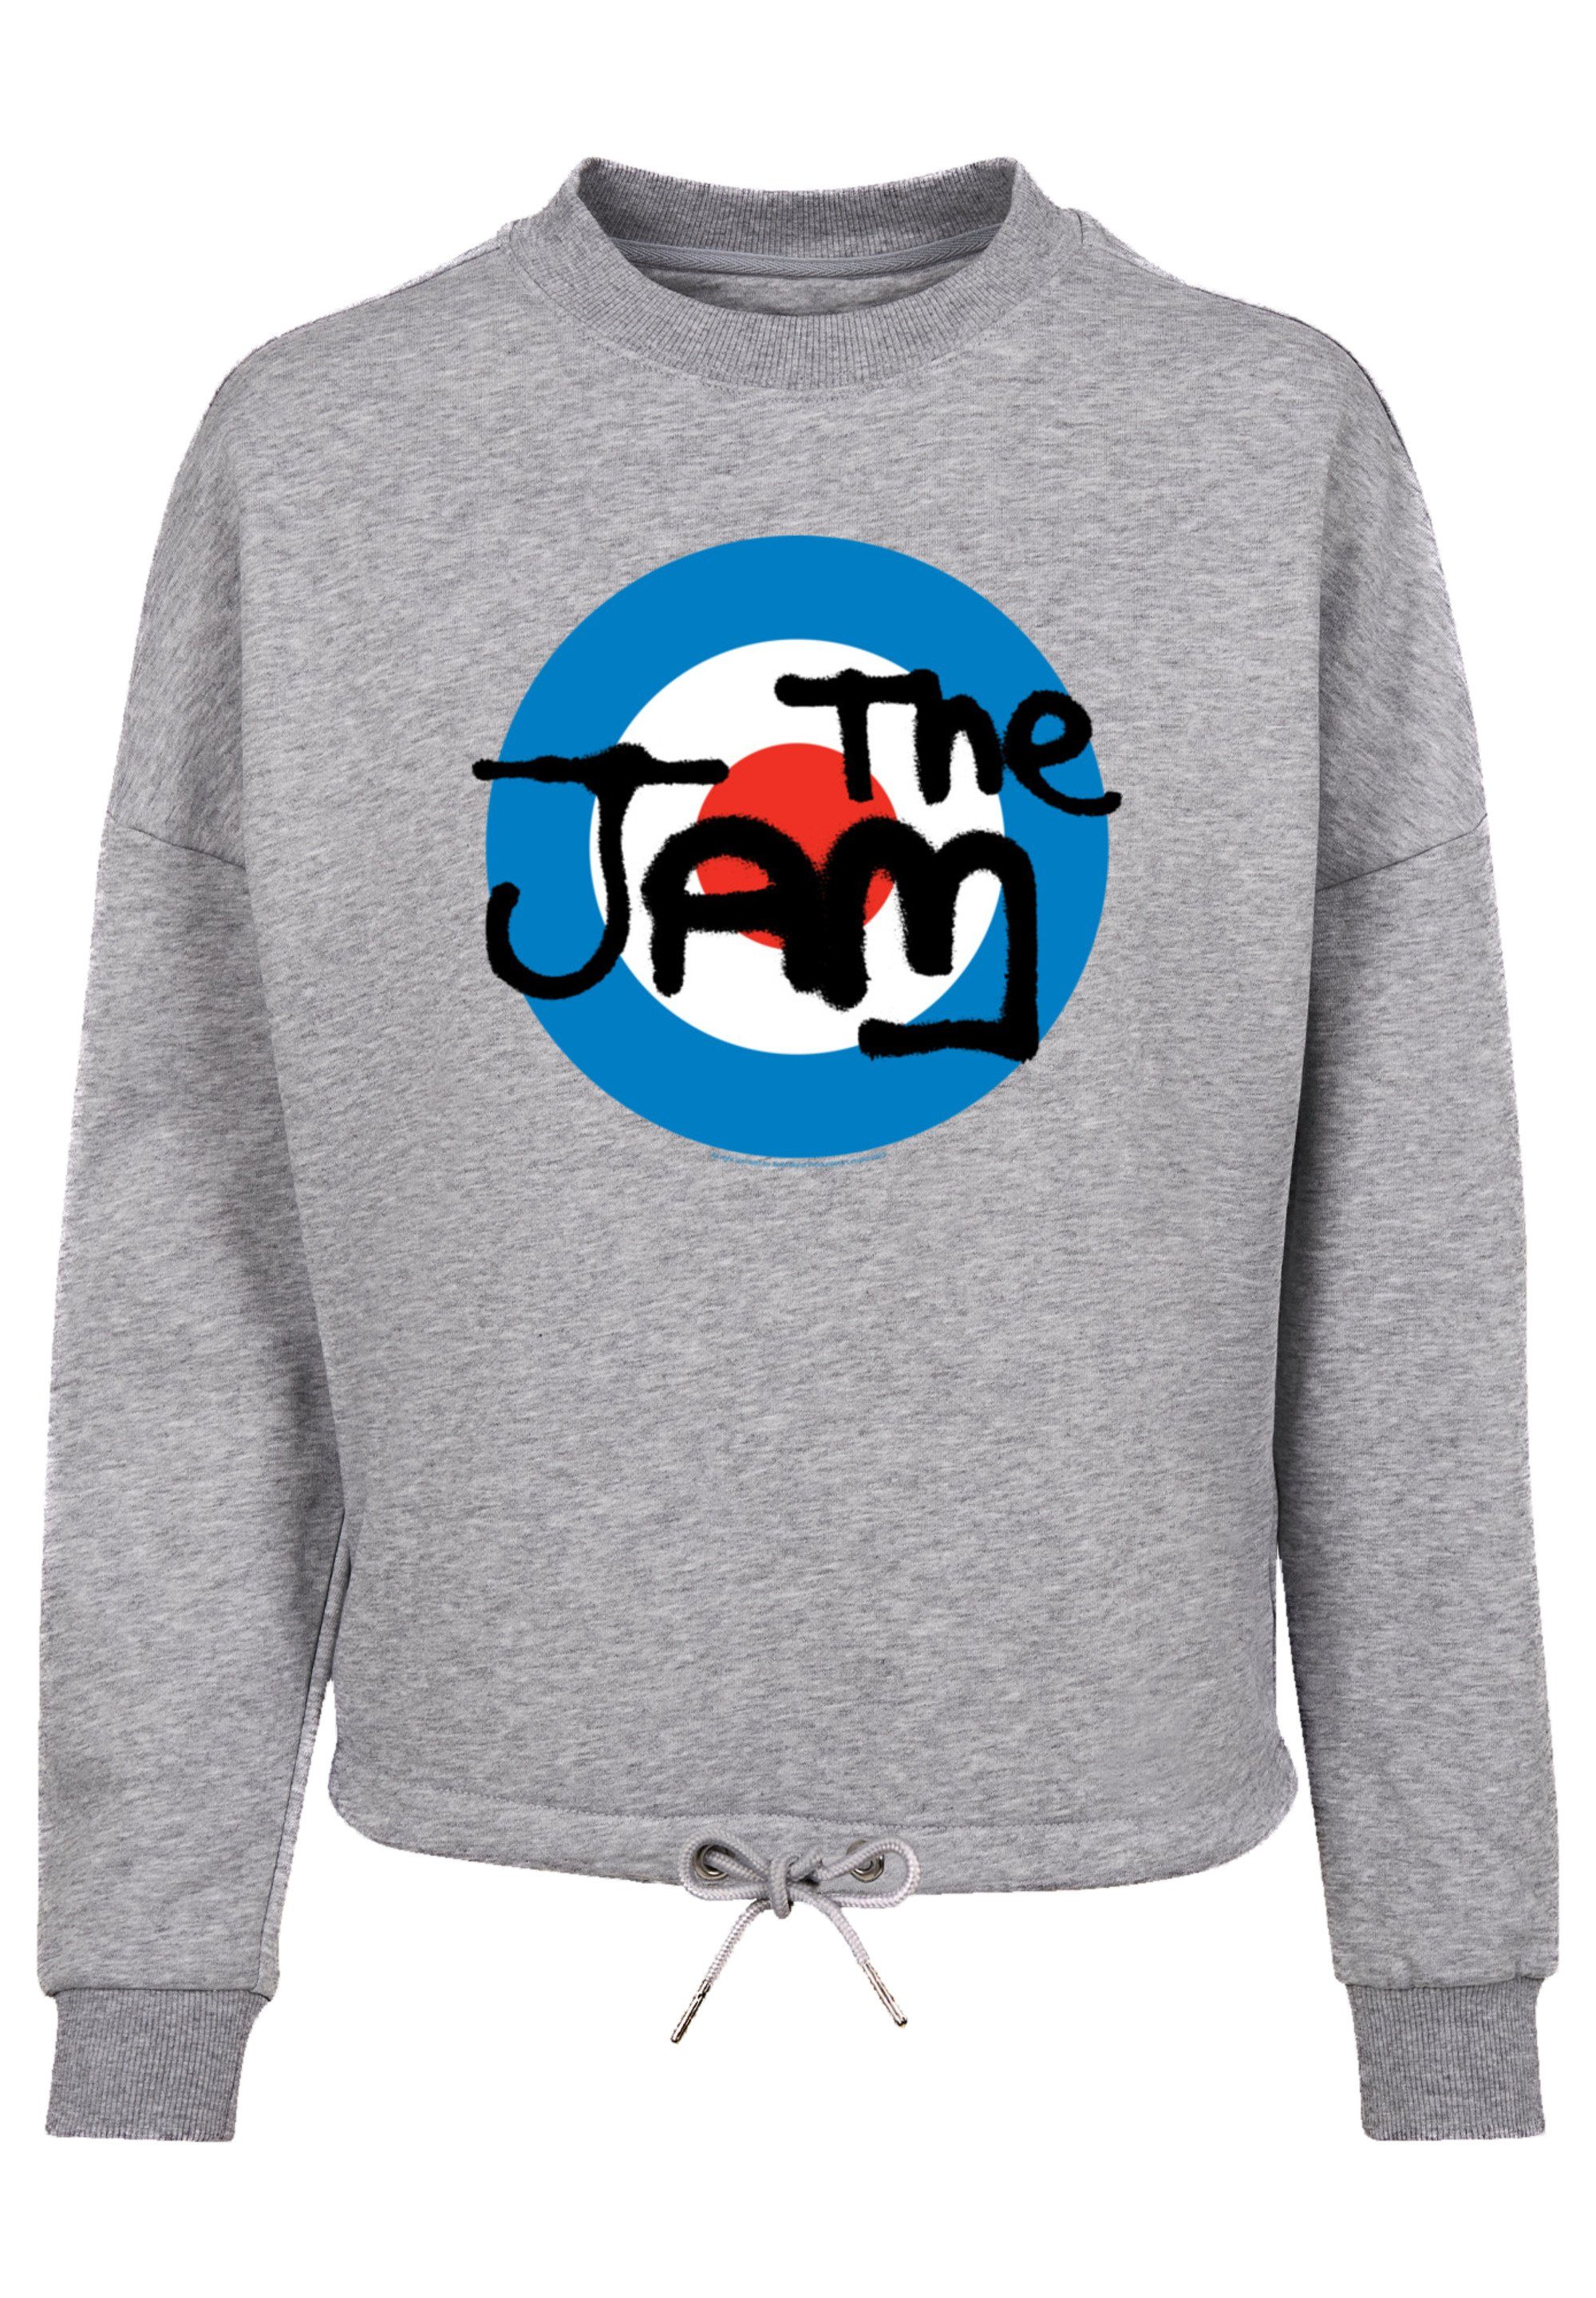 Band Sweatshirt Jam Classic und The Weit Ärmel Logo Bündchen Premium am Kordelzug F4NT4STIC Qualität, geschnittenen